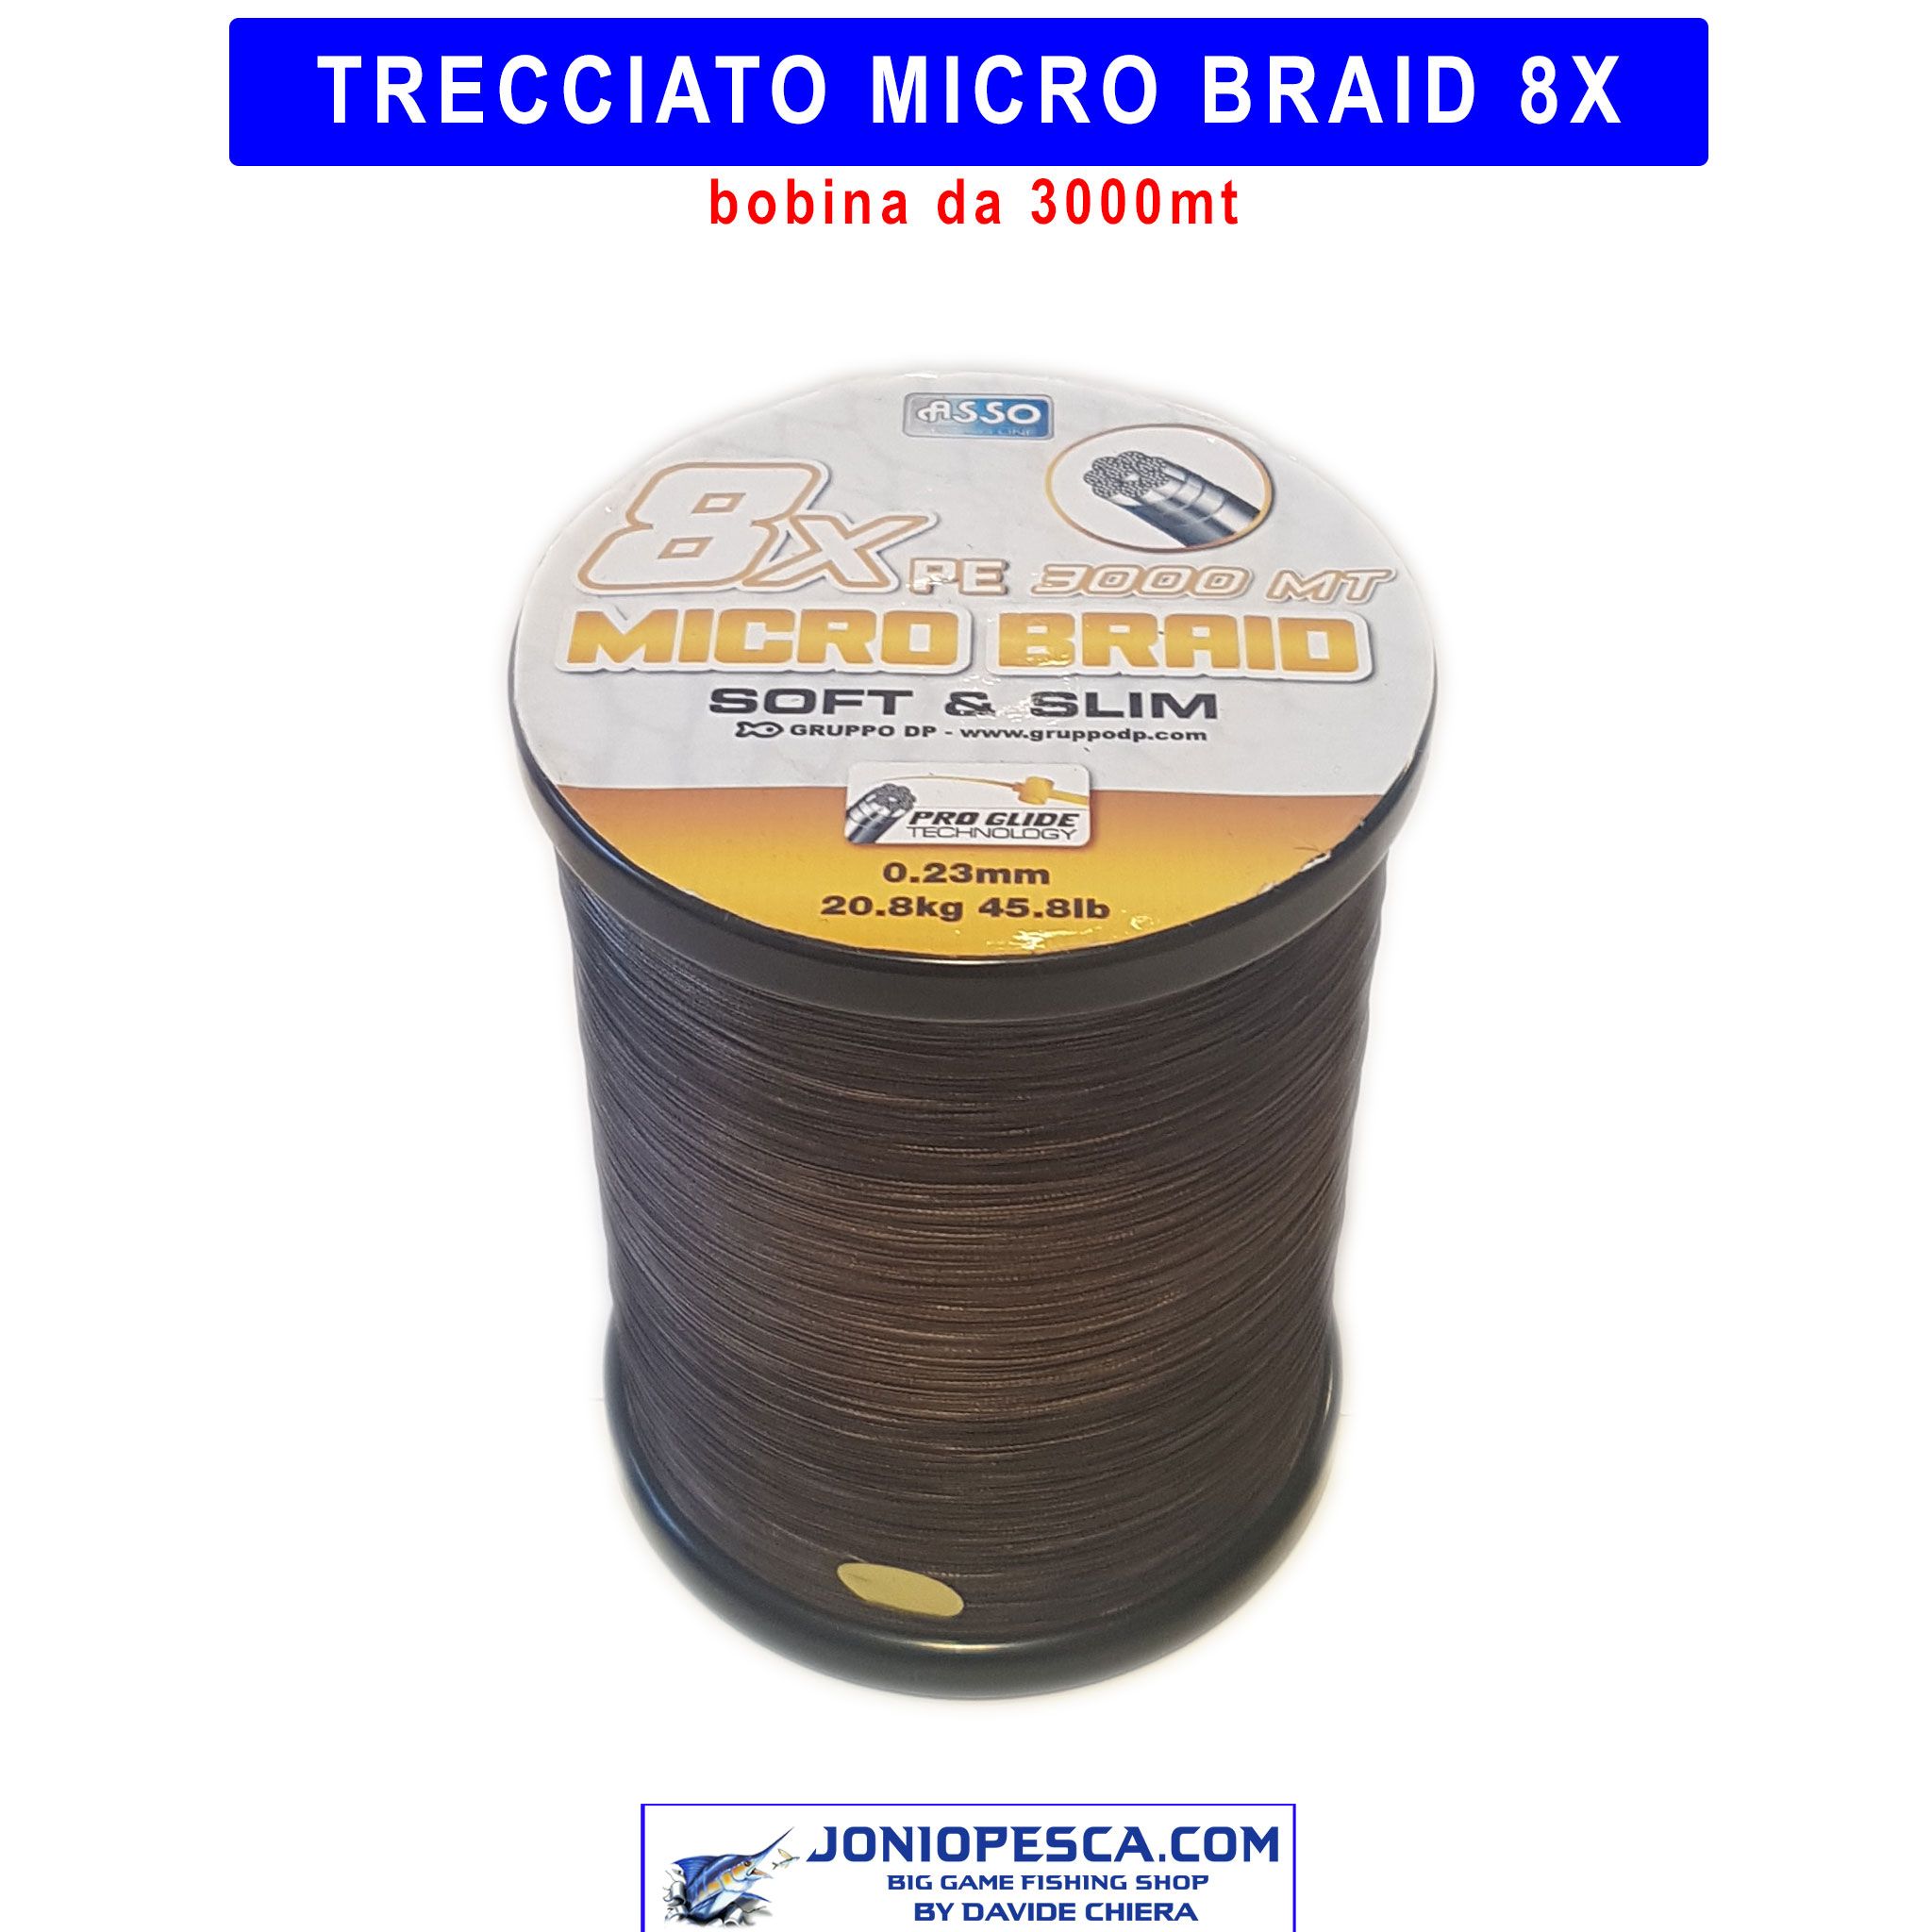 trecciato-micro-braid-3000mt